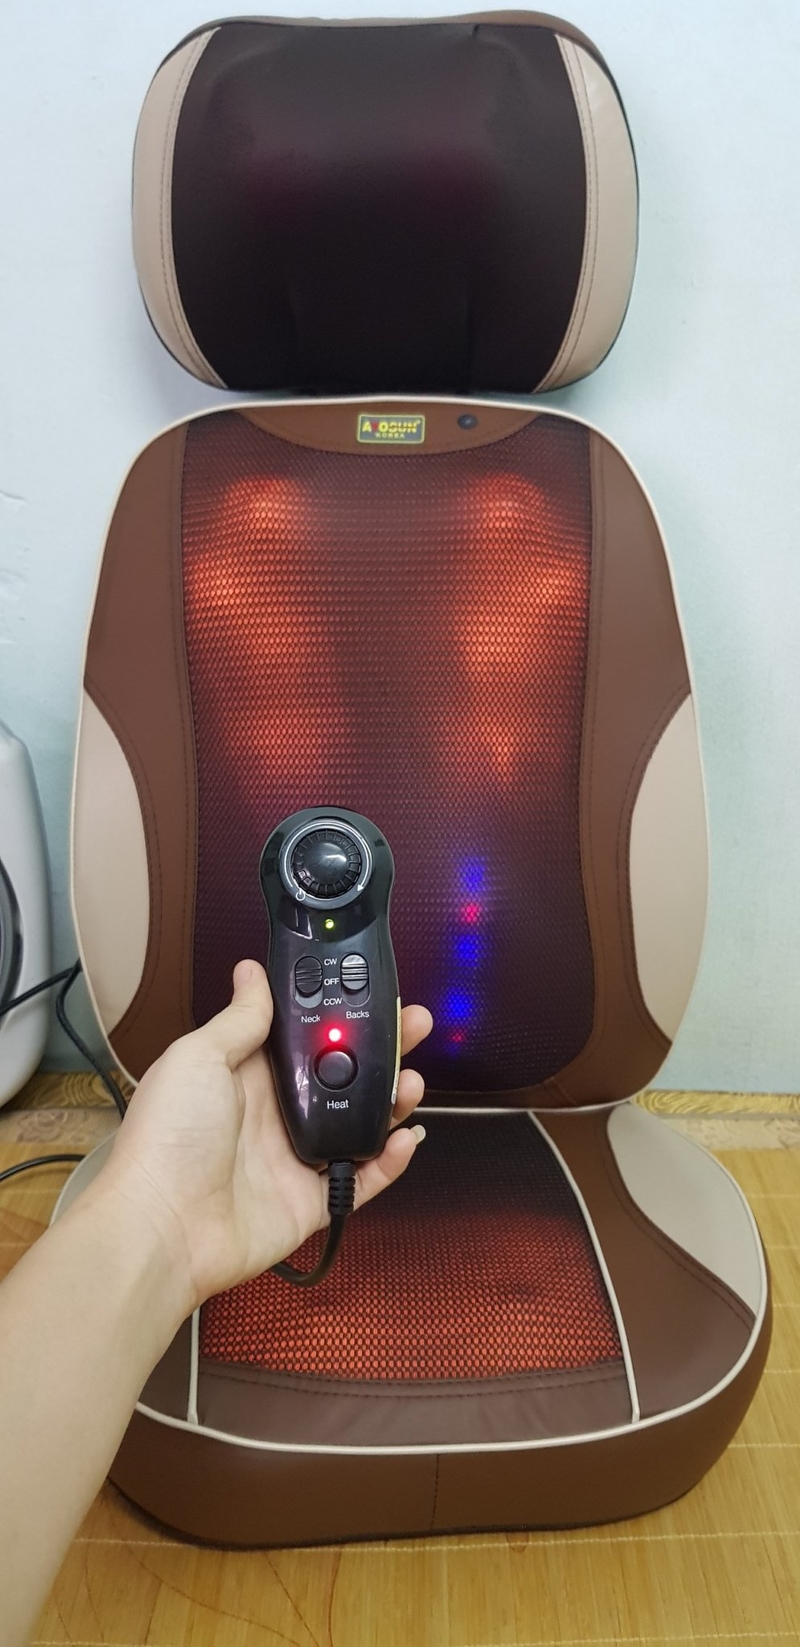 Ghế massage mini hàn quốc có tia hồng ngoại giảm đau theo huyệt đạo cơ thể  | Vietnam.net.vn - Sàn thương mại điện tử